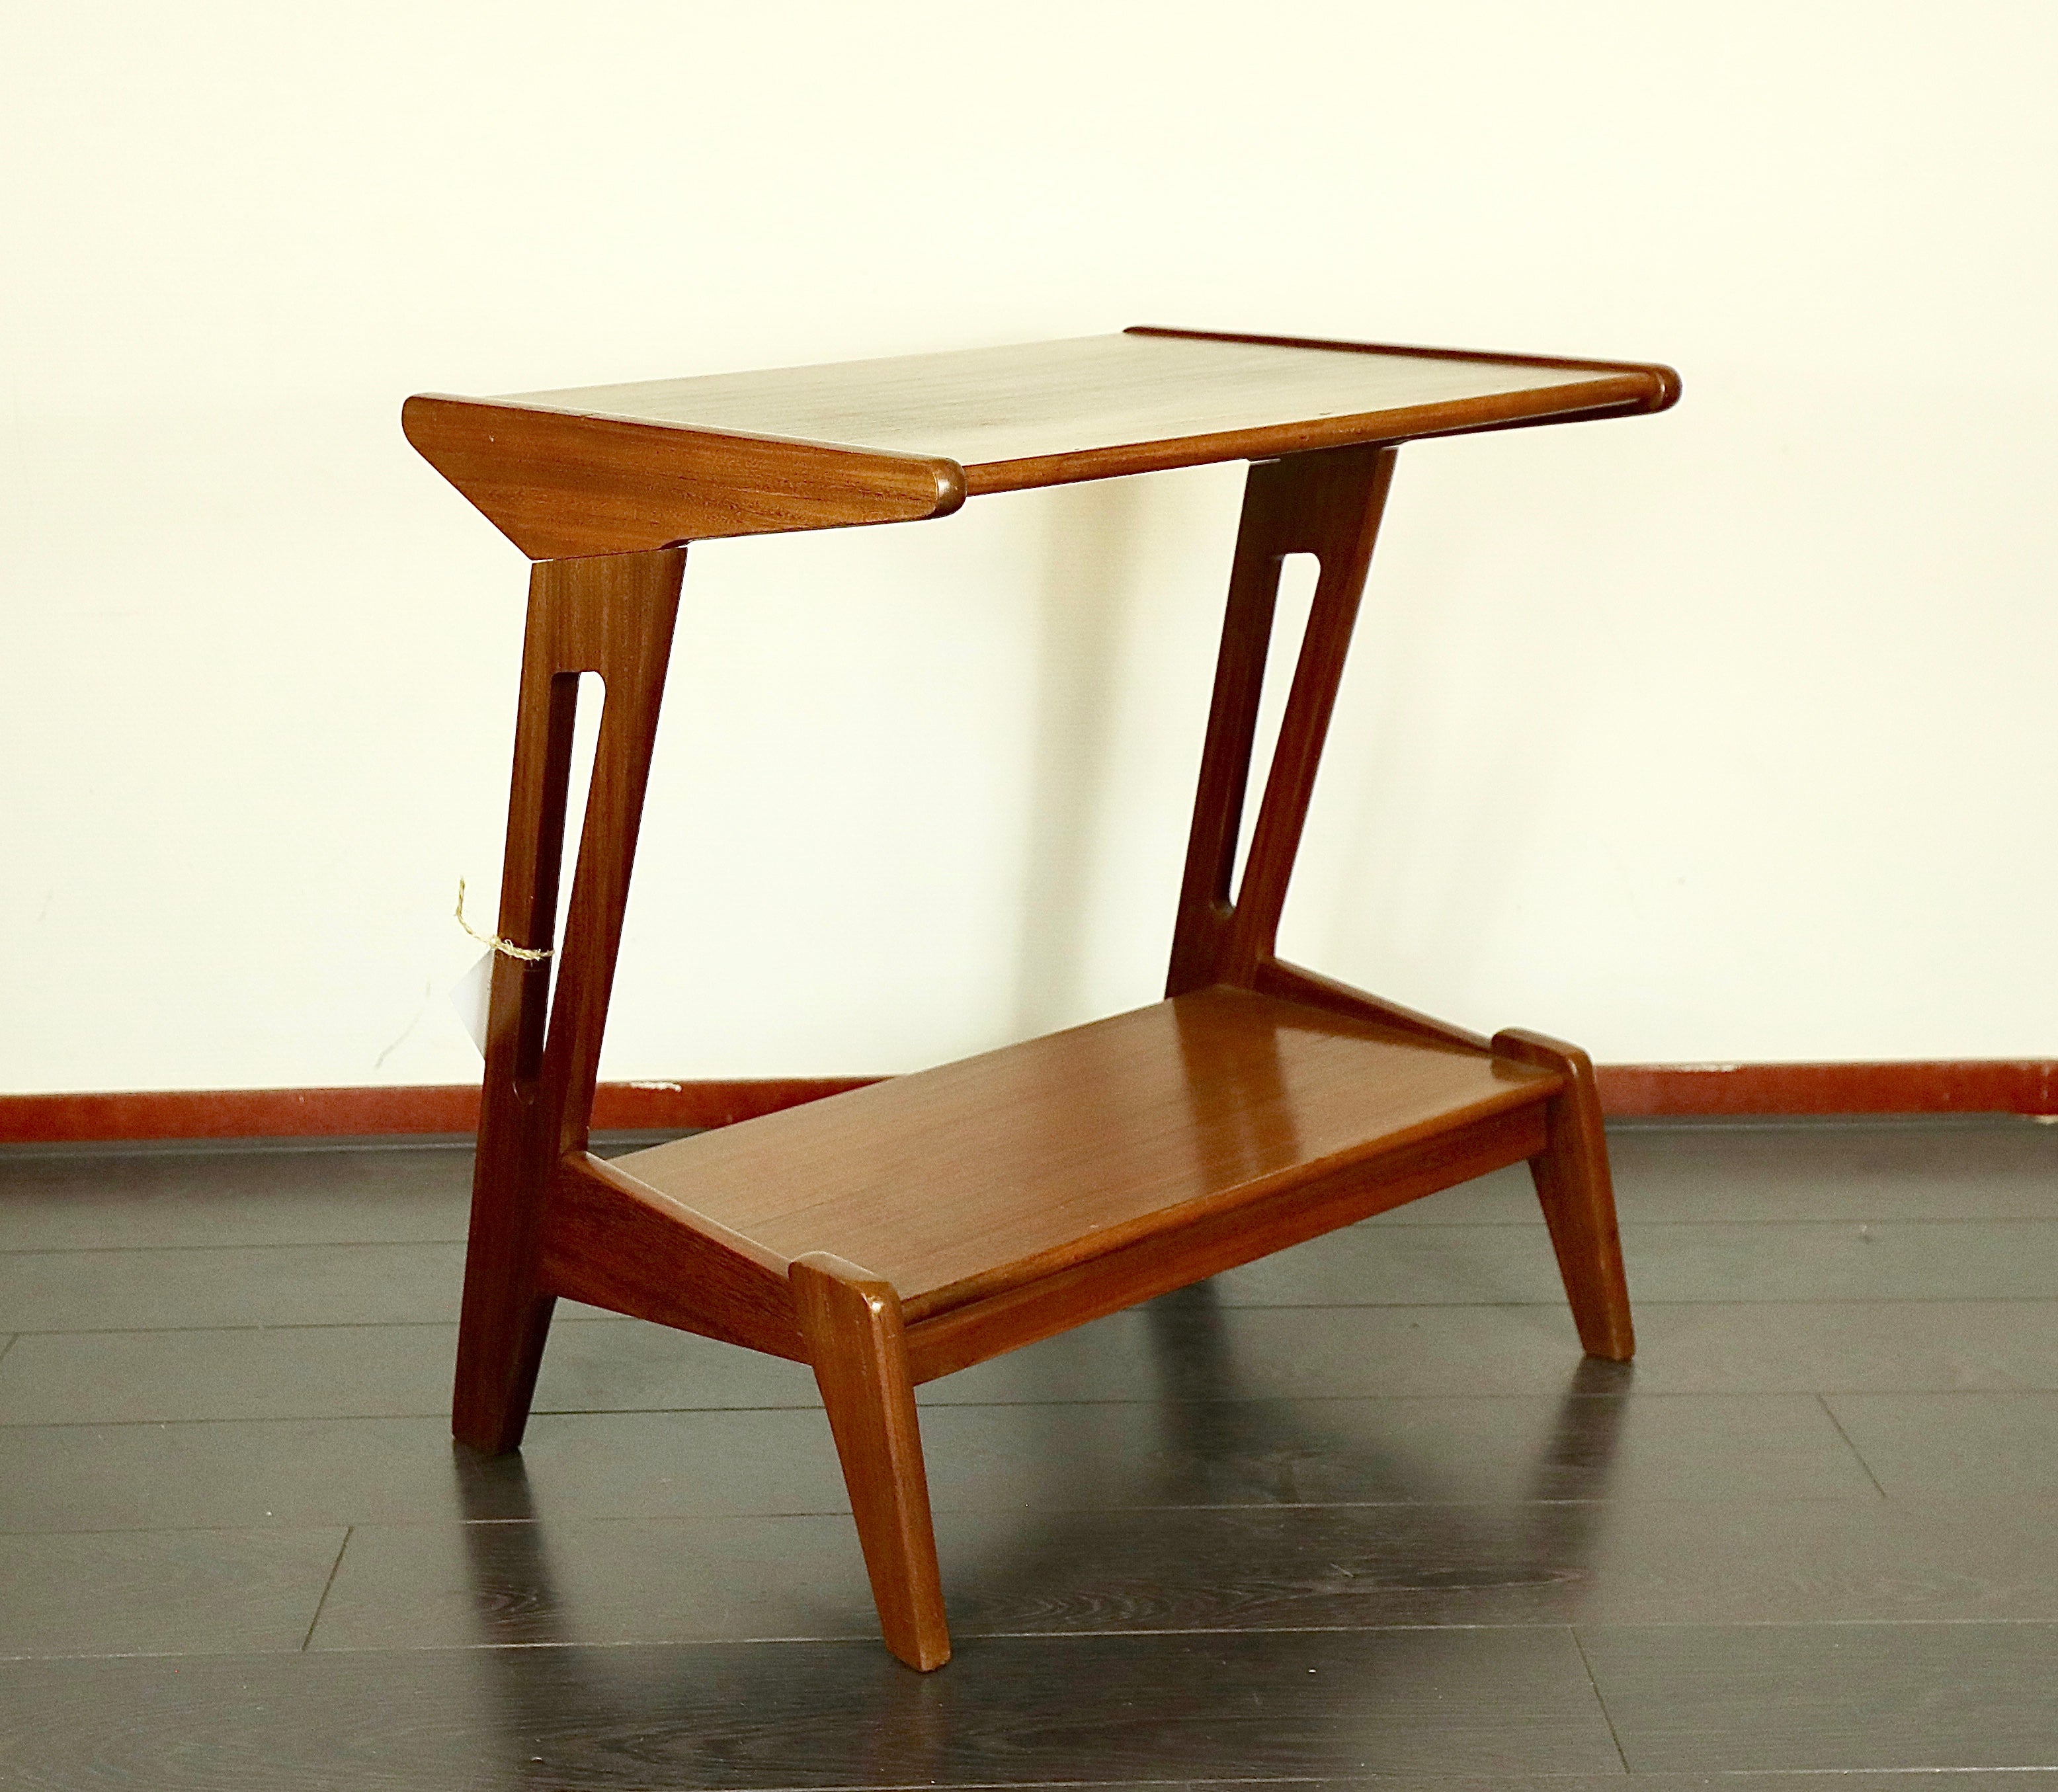 VERY NICE CABINET / TABLE, LOUIS VAN TEEFFELEN, WeBe, DUTCH DESIGN, 1960s